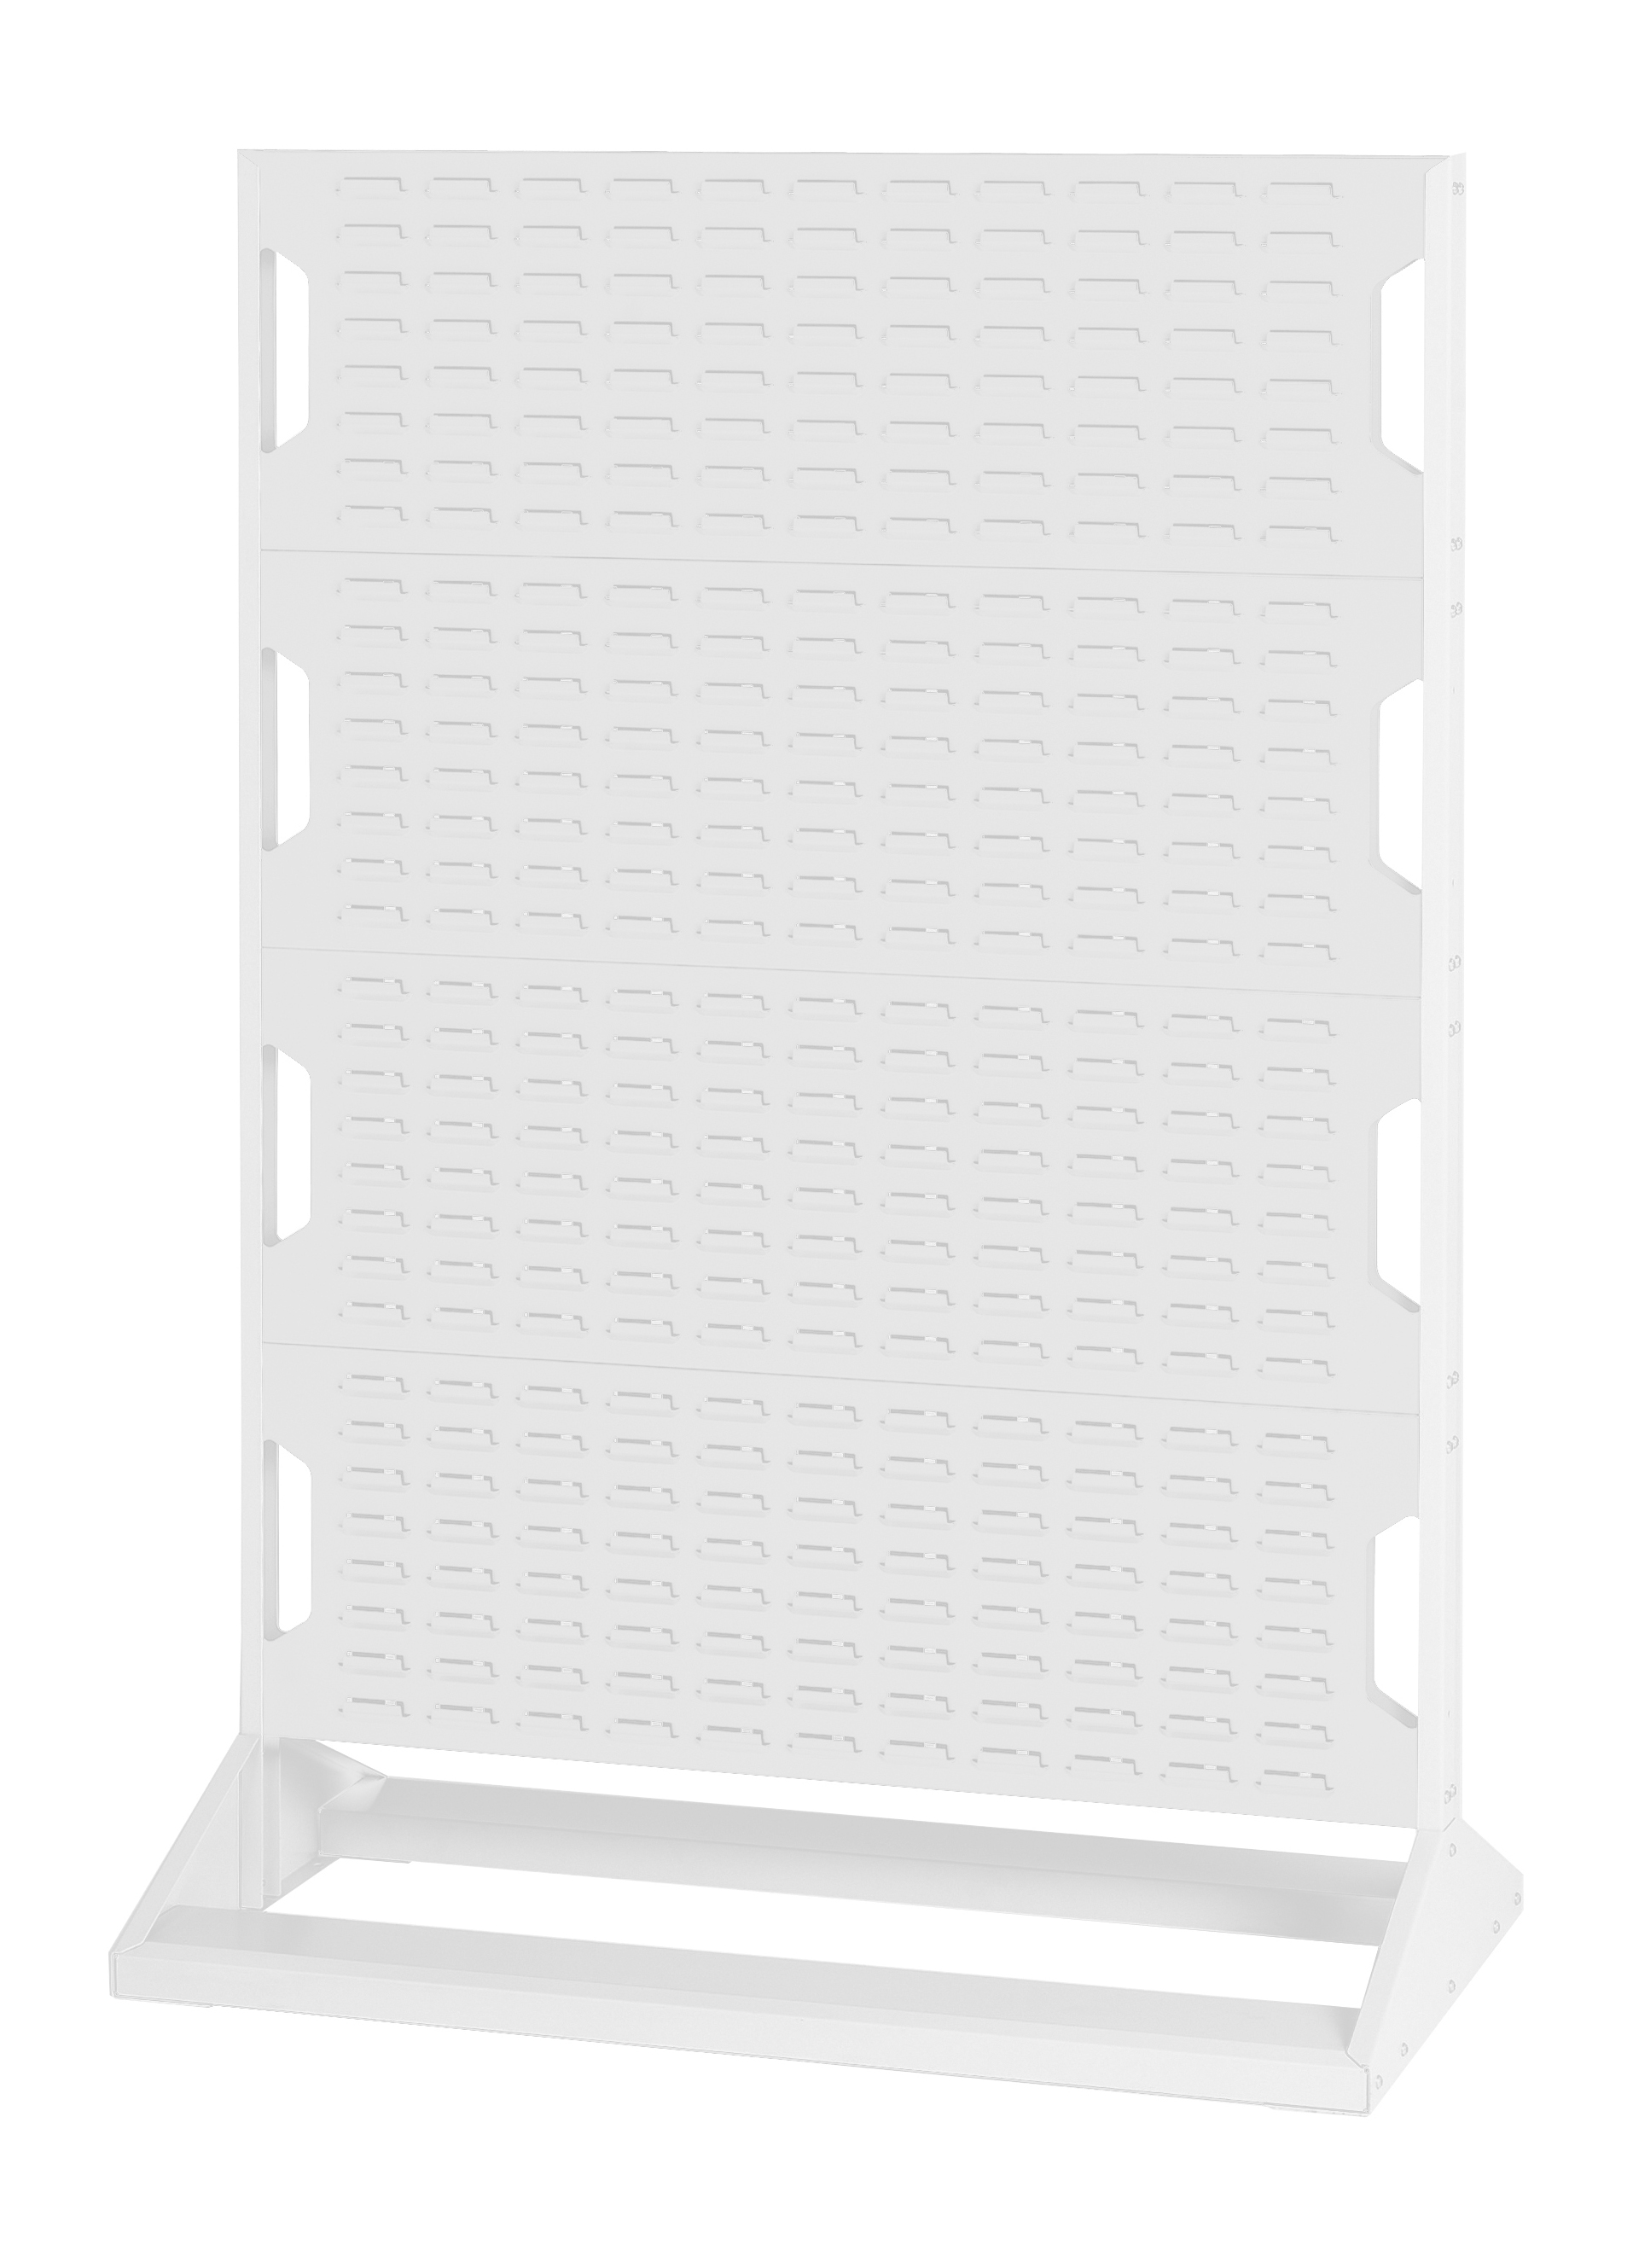 Bott Louvre Panel Rack (Single Sided) - 16917126.16V